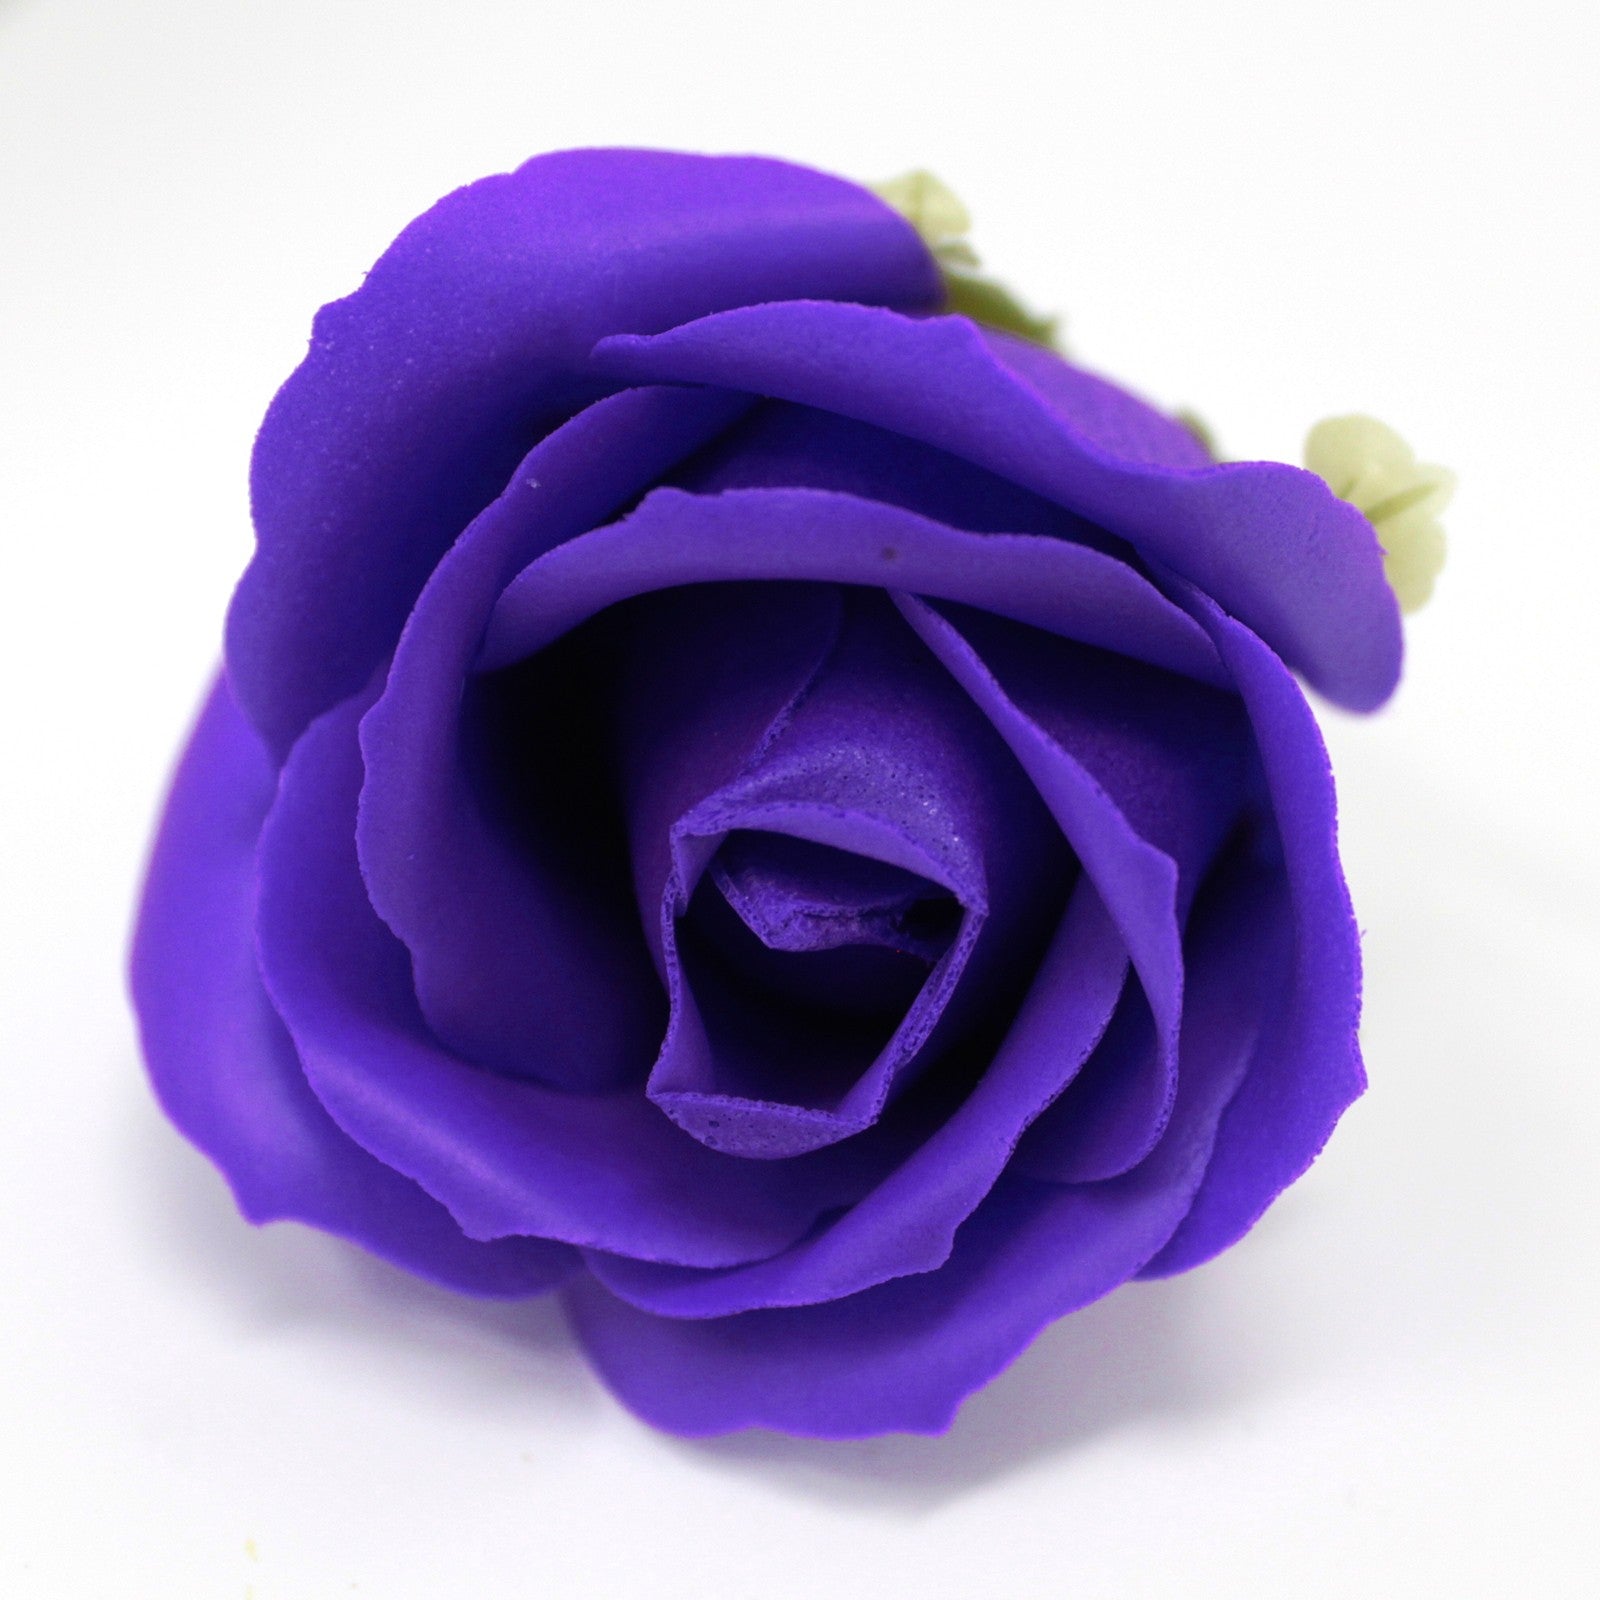 View Craft Soap Flowers Med Rose Violet information